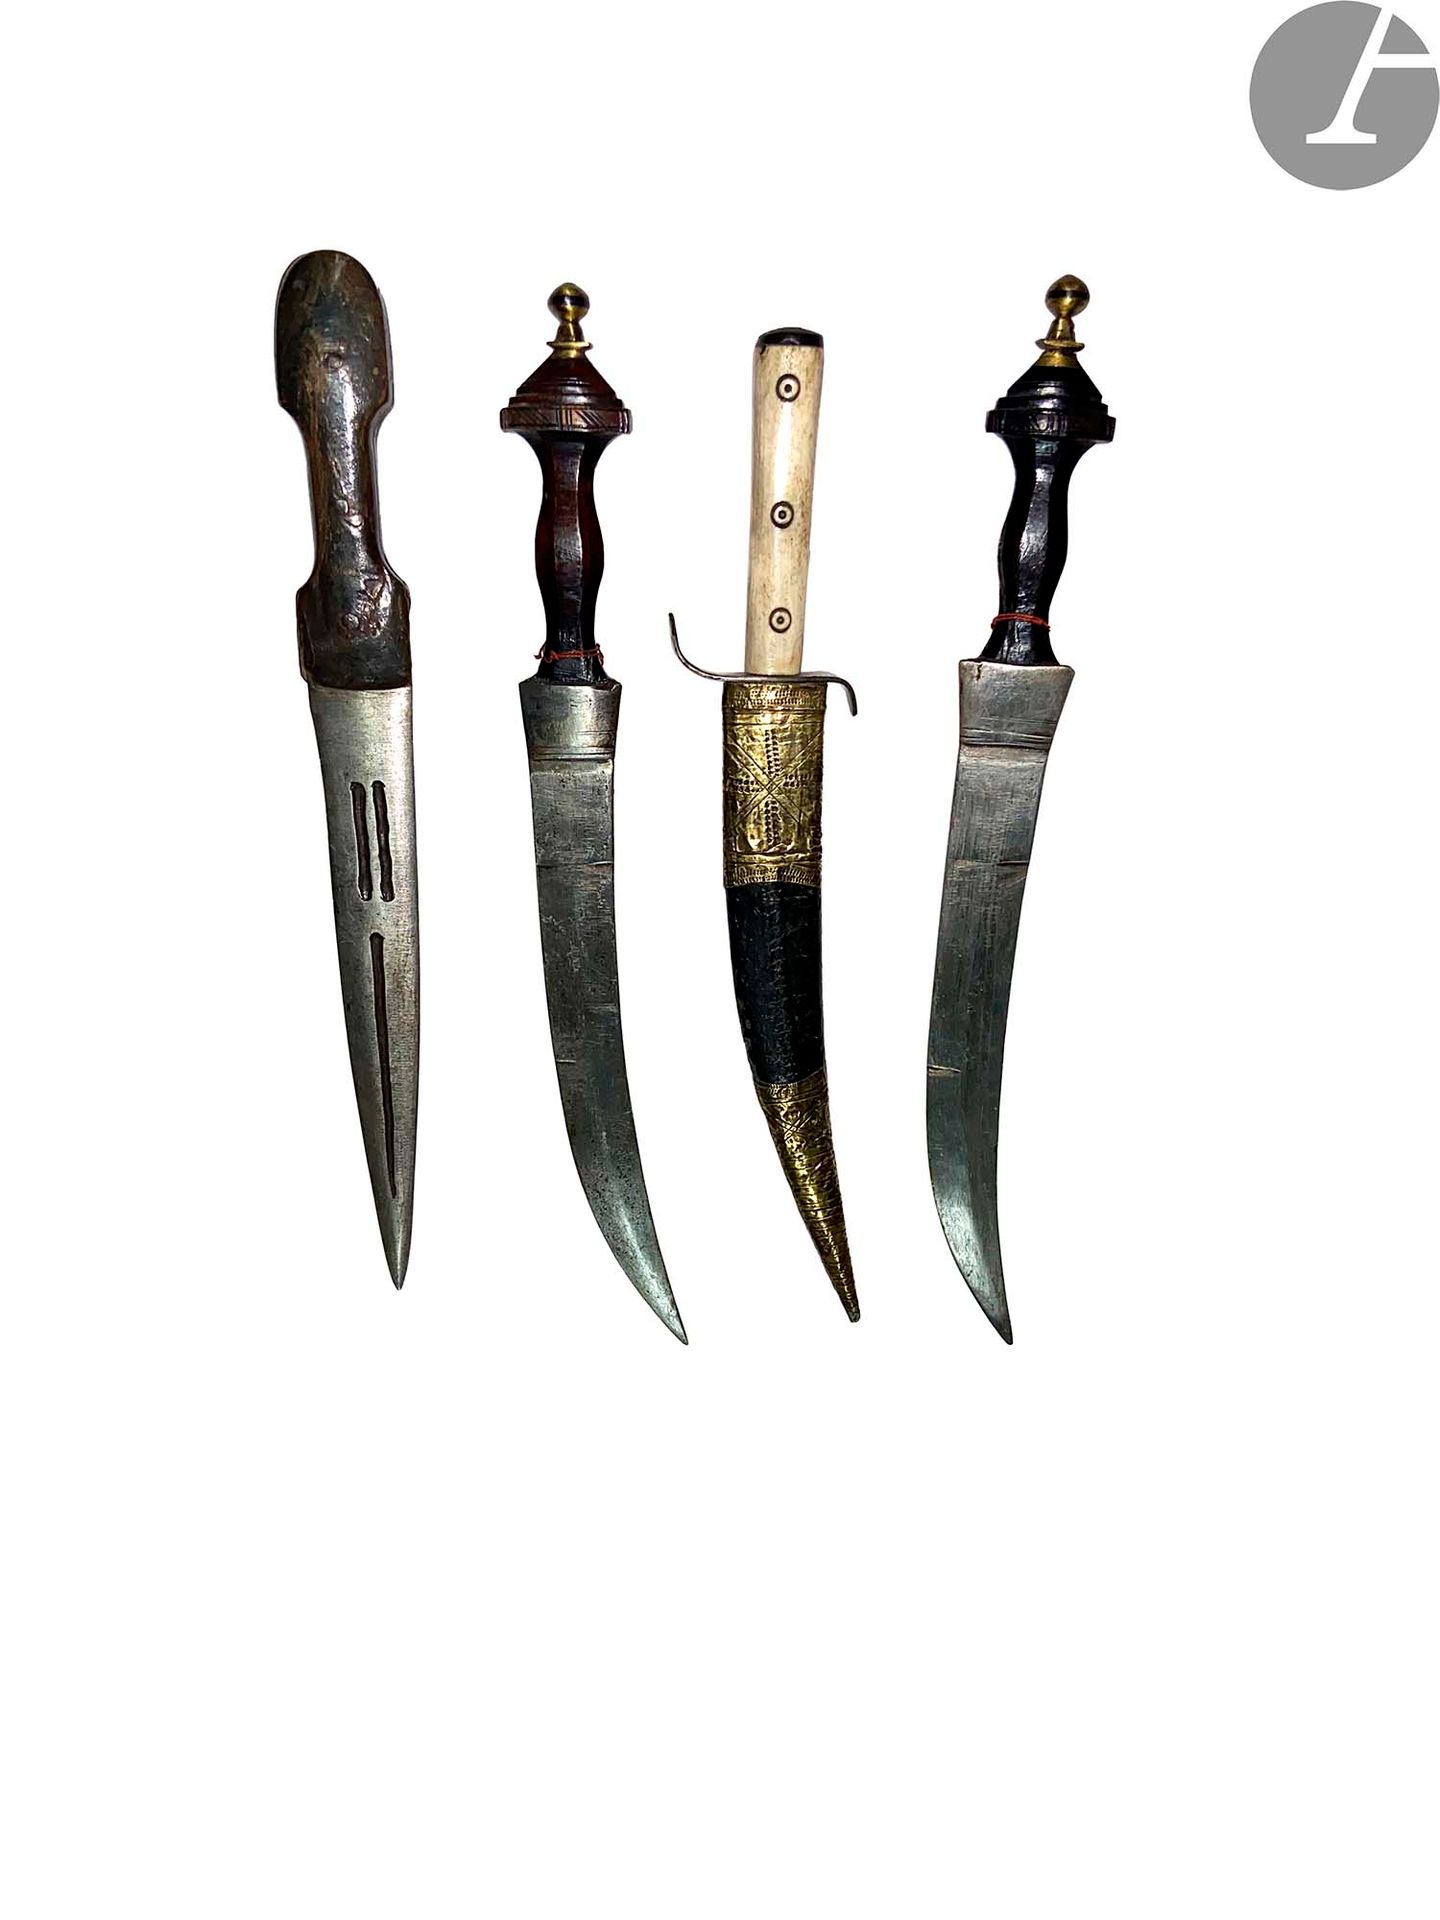 Null Quattro pugnali neri africani. 
Tre S.F. Maniglie in legno e osso. 
A.B.E.